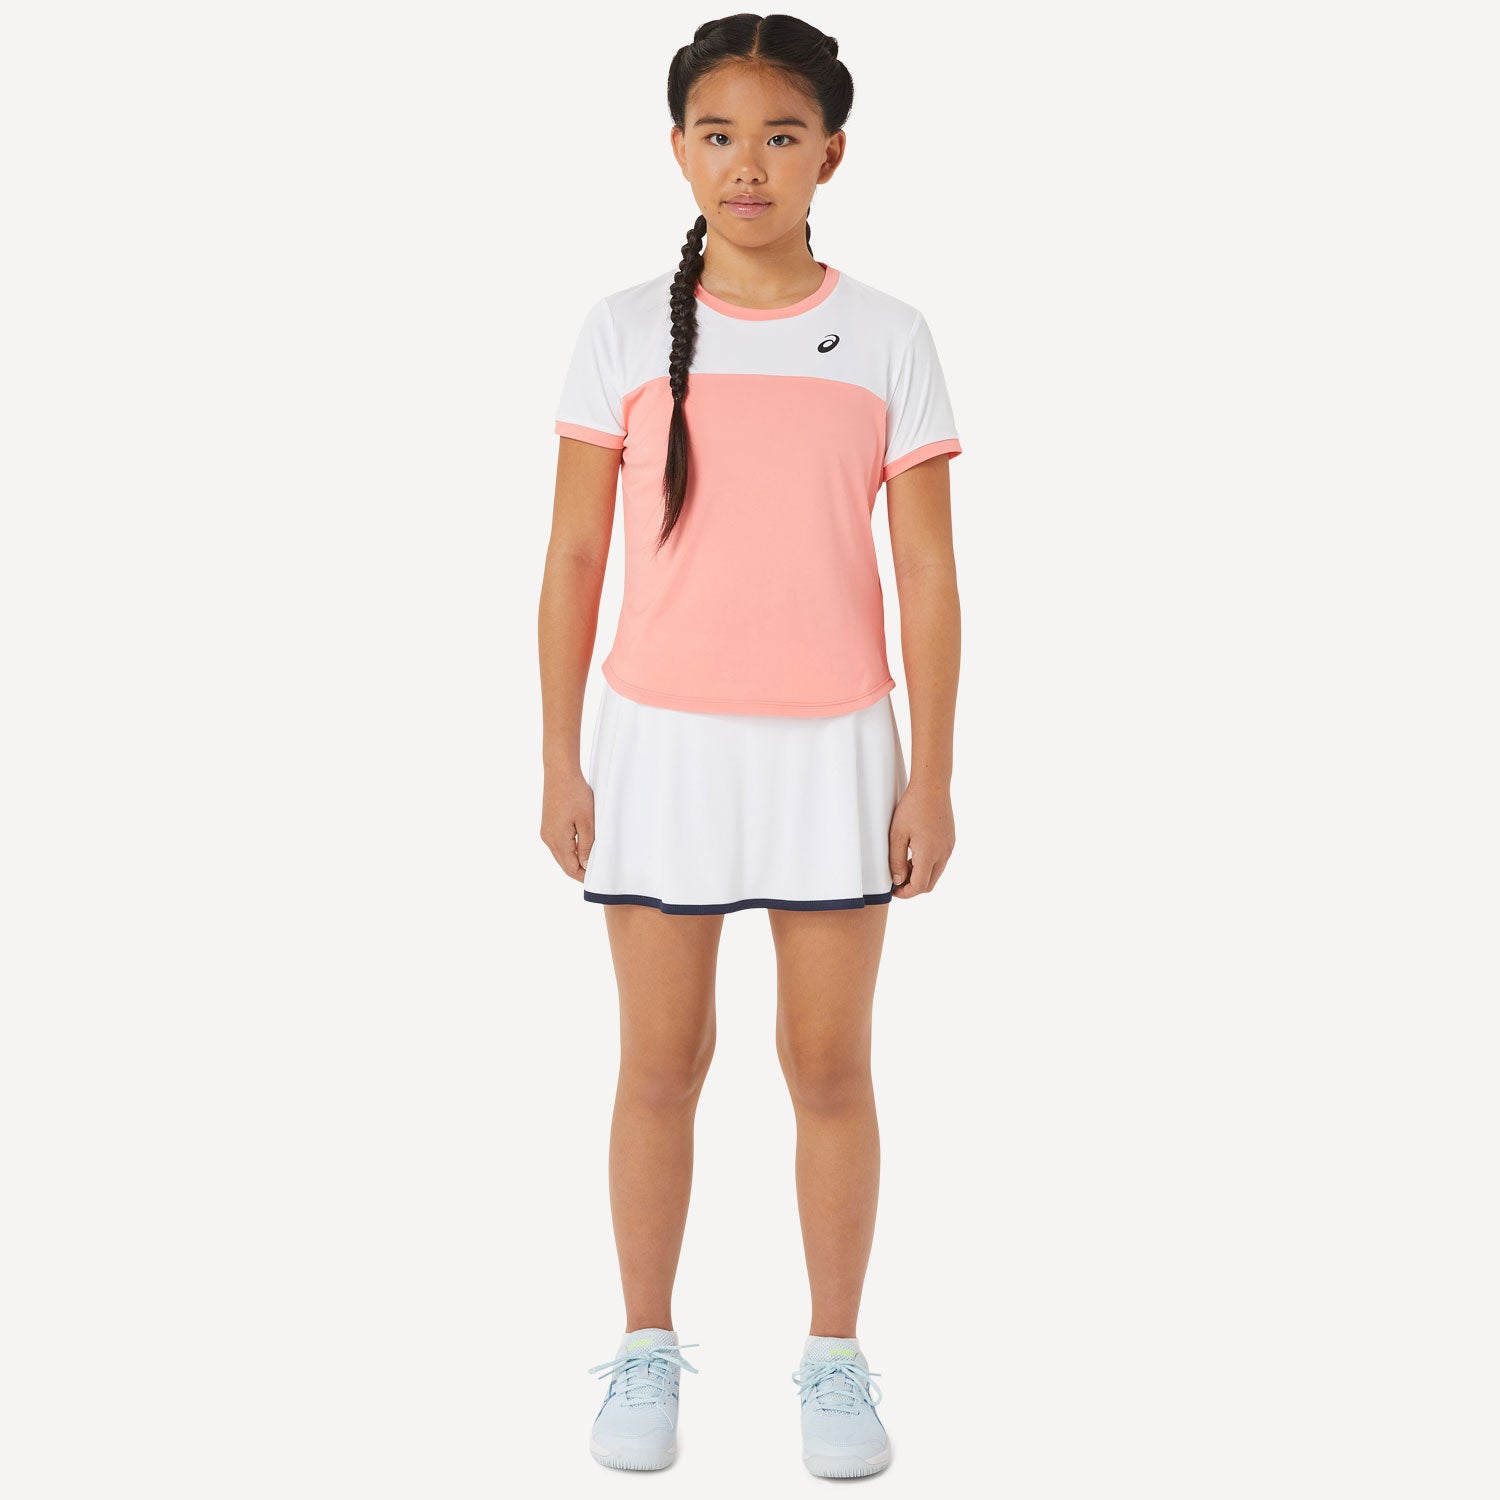 ASICS Girls' Tennis Skort White (6)